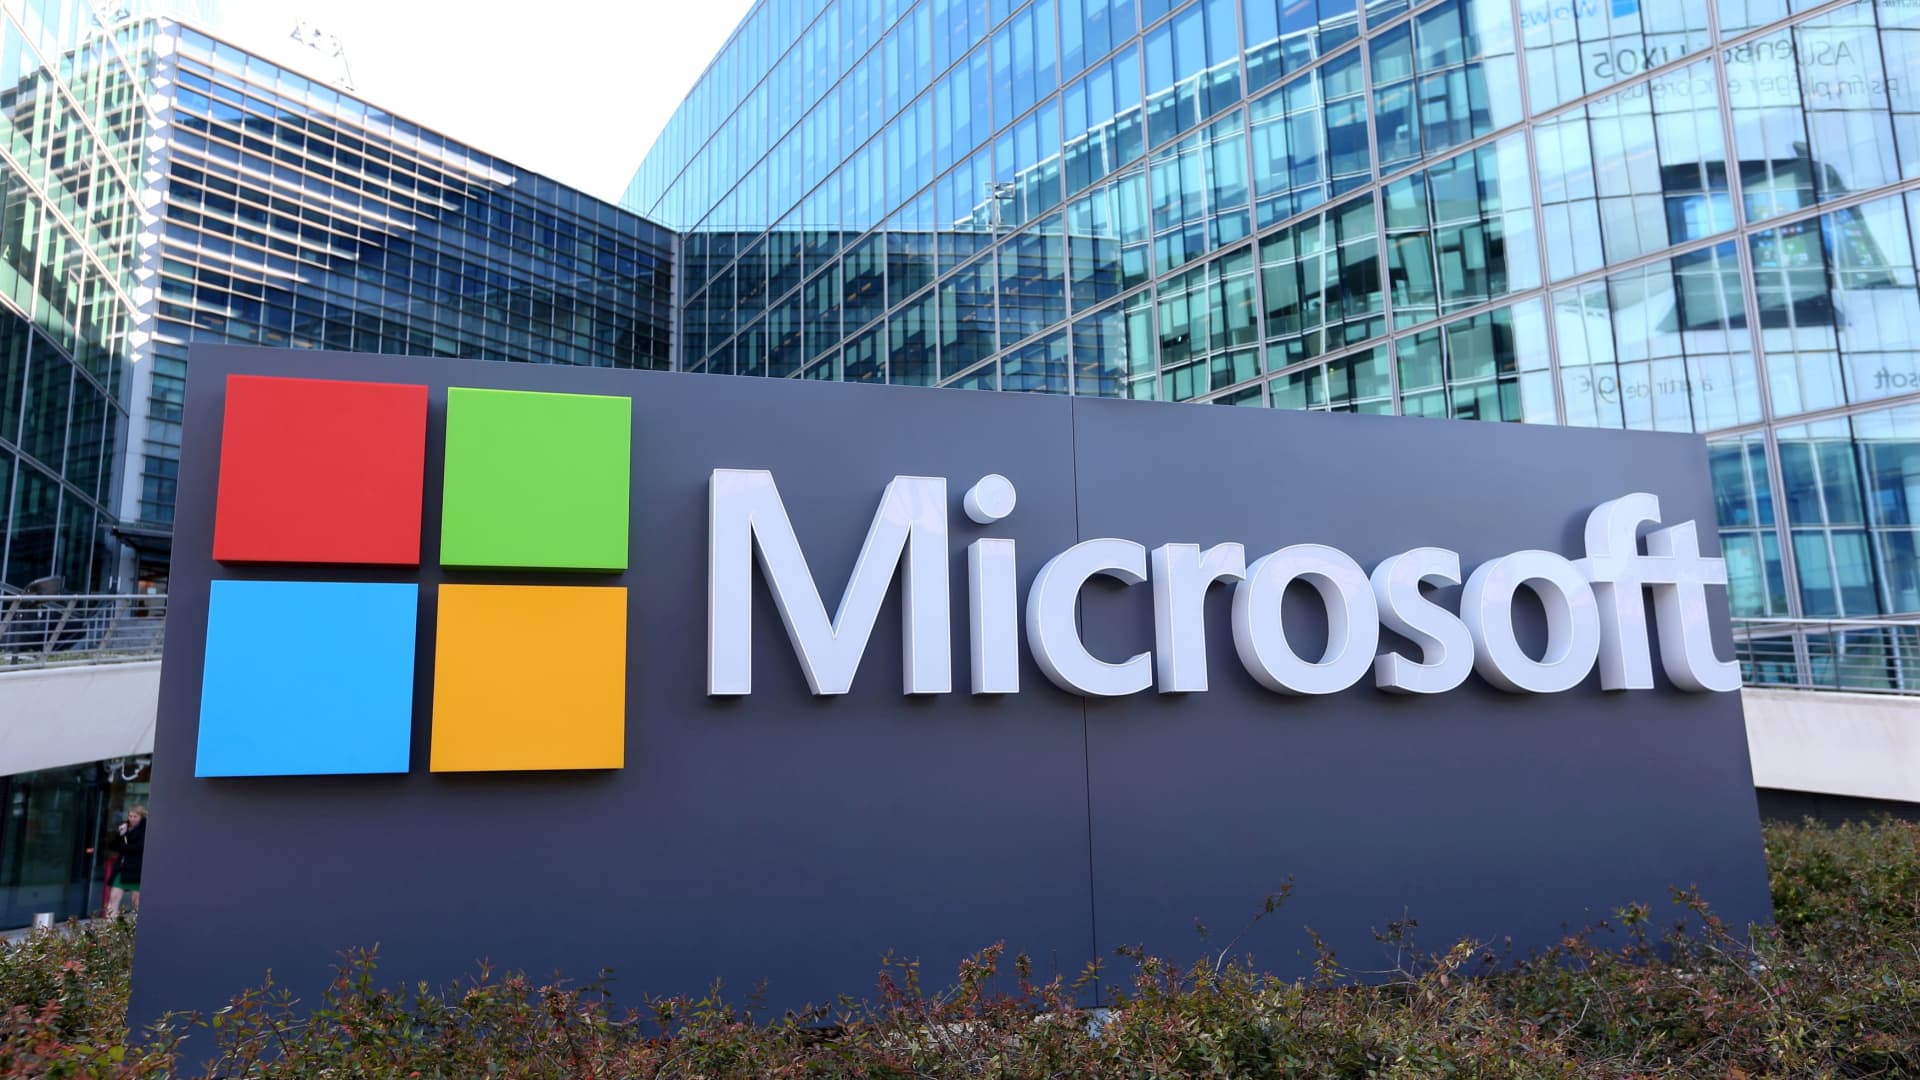 Microsoft Corporation headquarters at Issy-les-Moulineaux, near Paris, France, April 18, 2016.